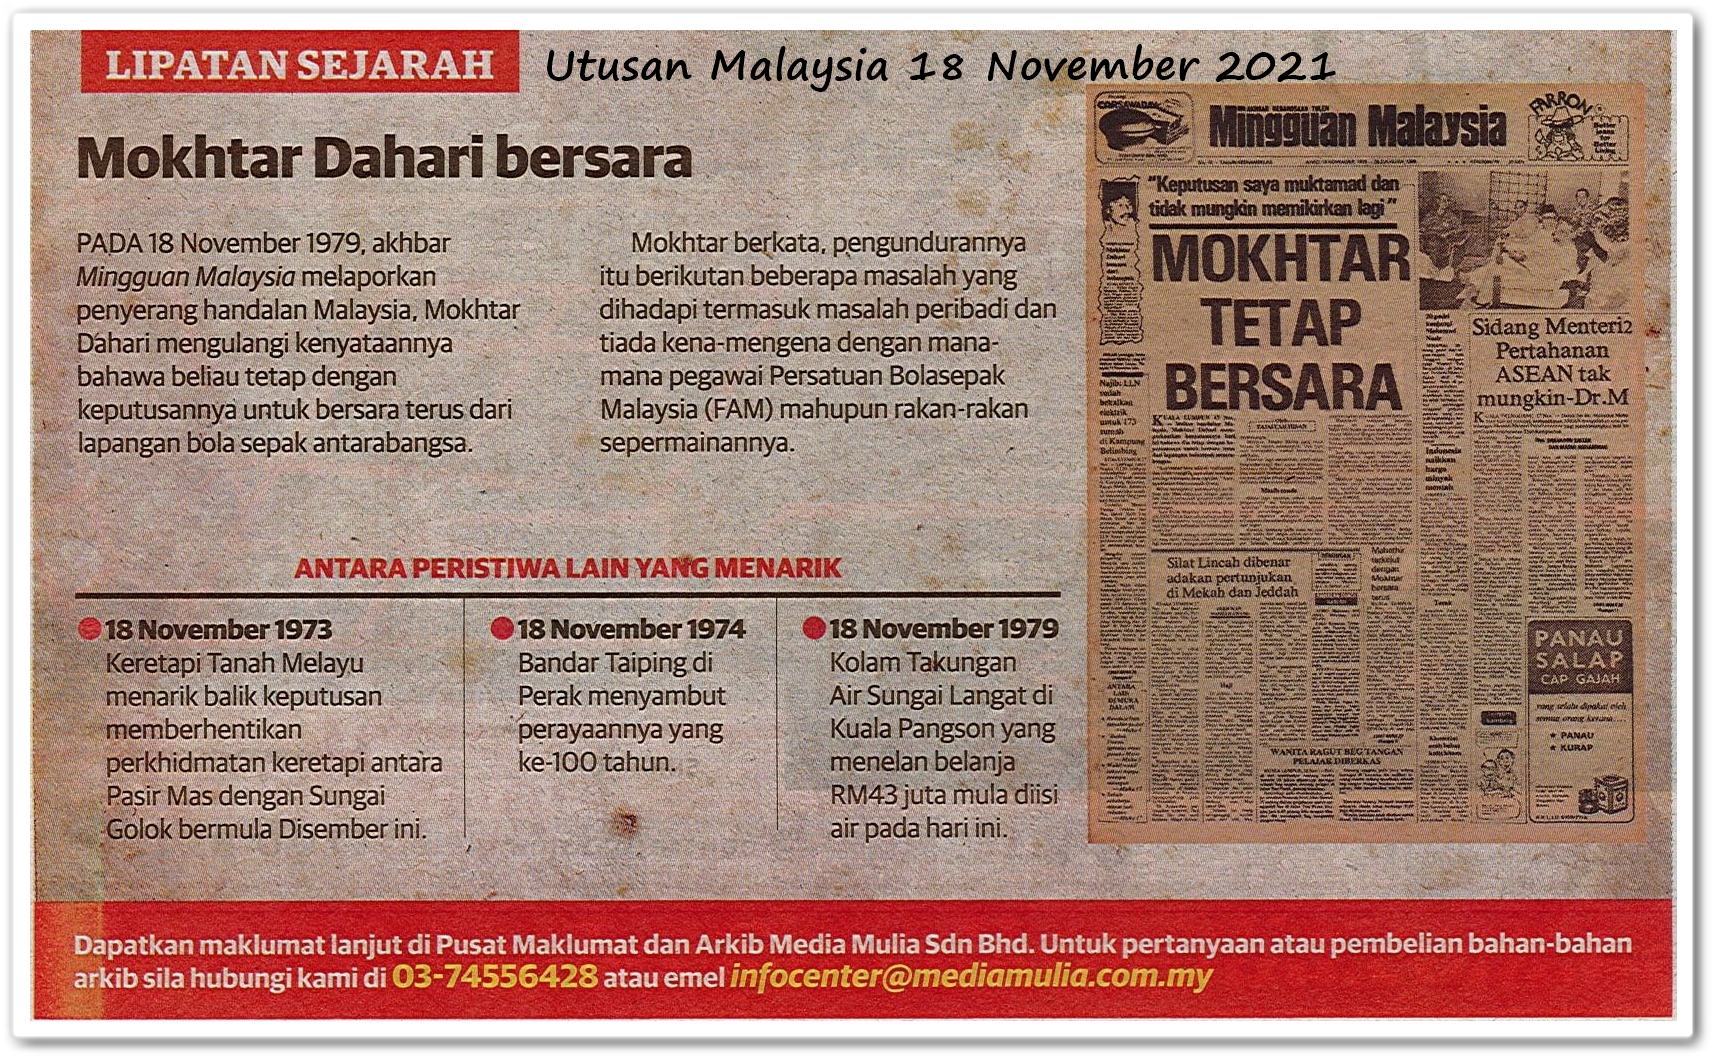 Lipatan sejarah 18 November - Keratan akhbar Utusan Malaysia 18 November 2021